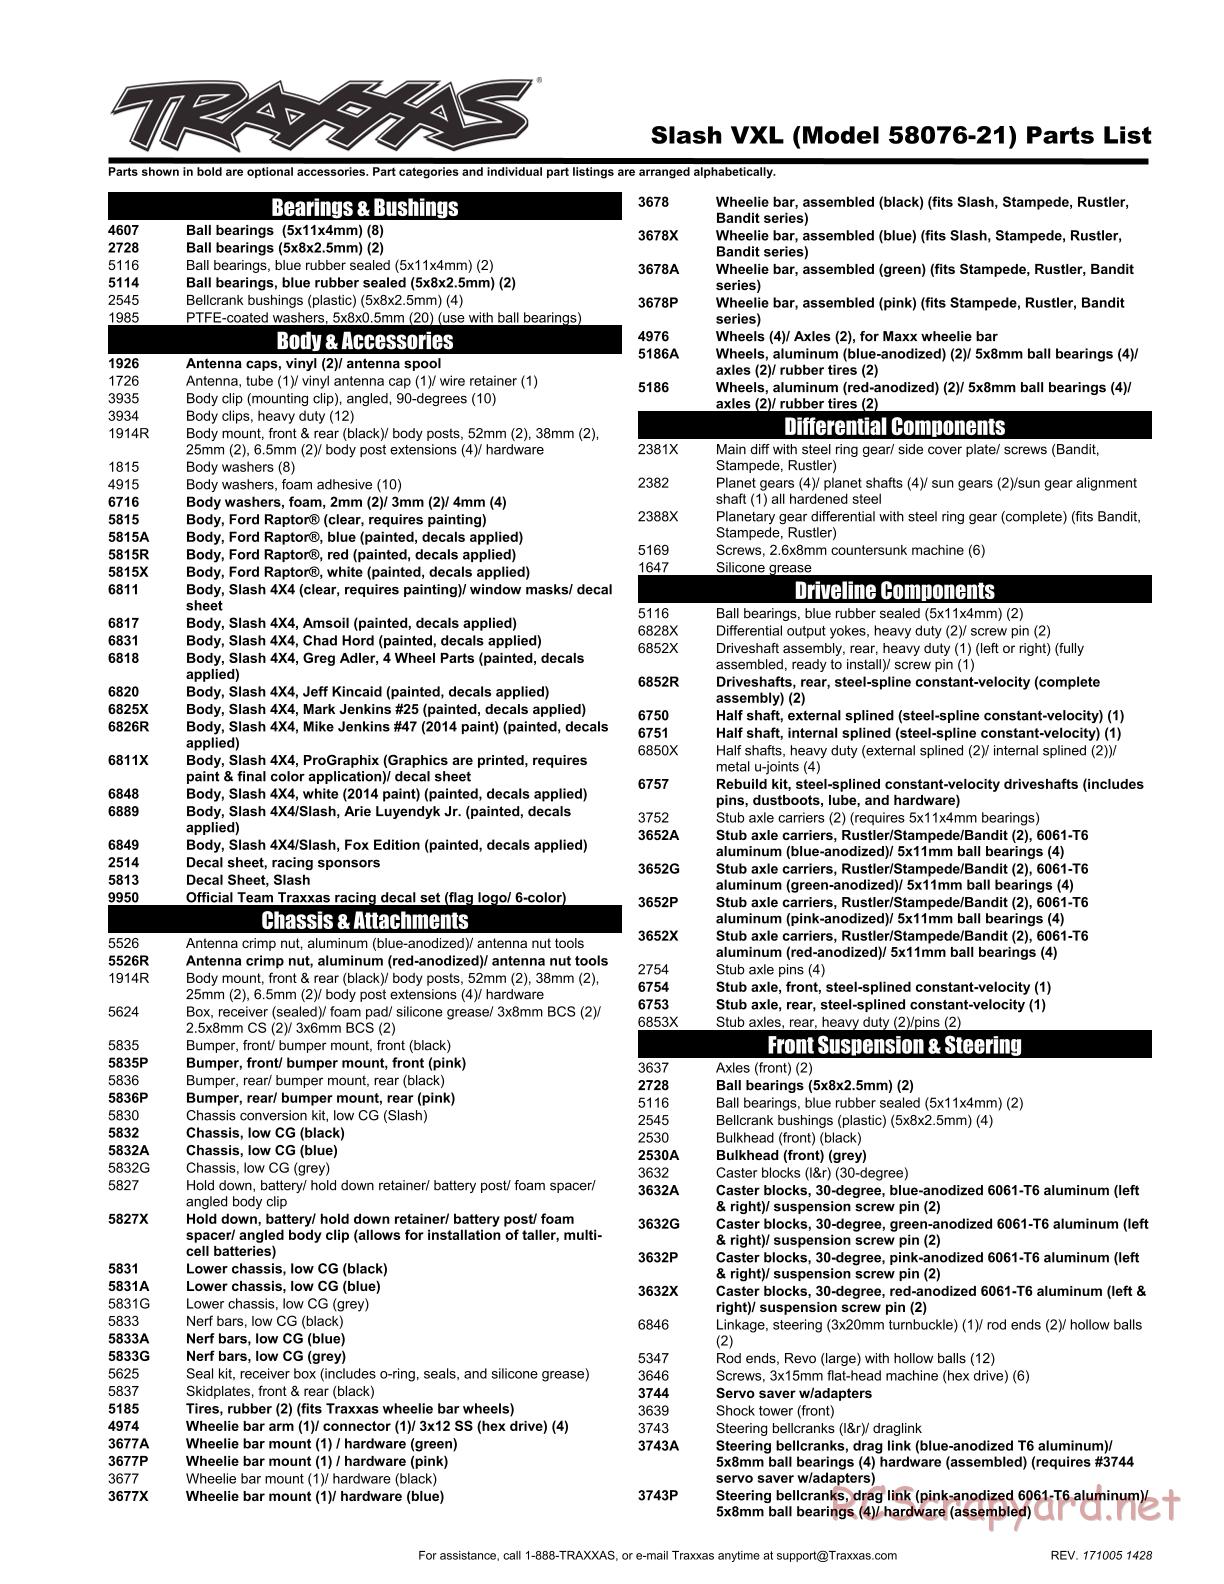 Traxxas - Slash 2WD VXL TSM OBA (2015) - Parts List - Page 1